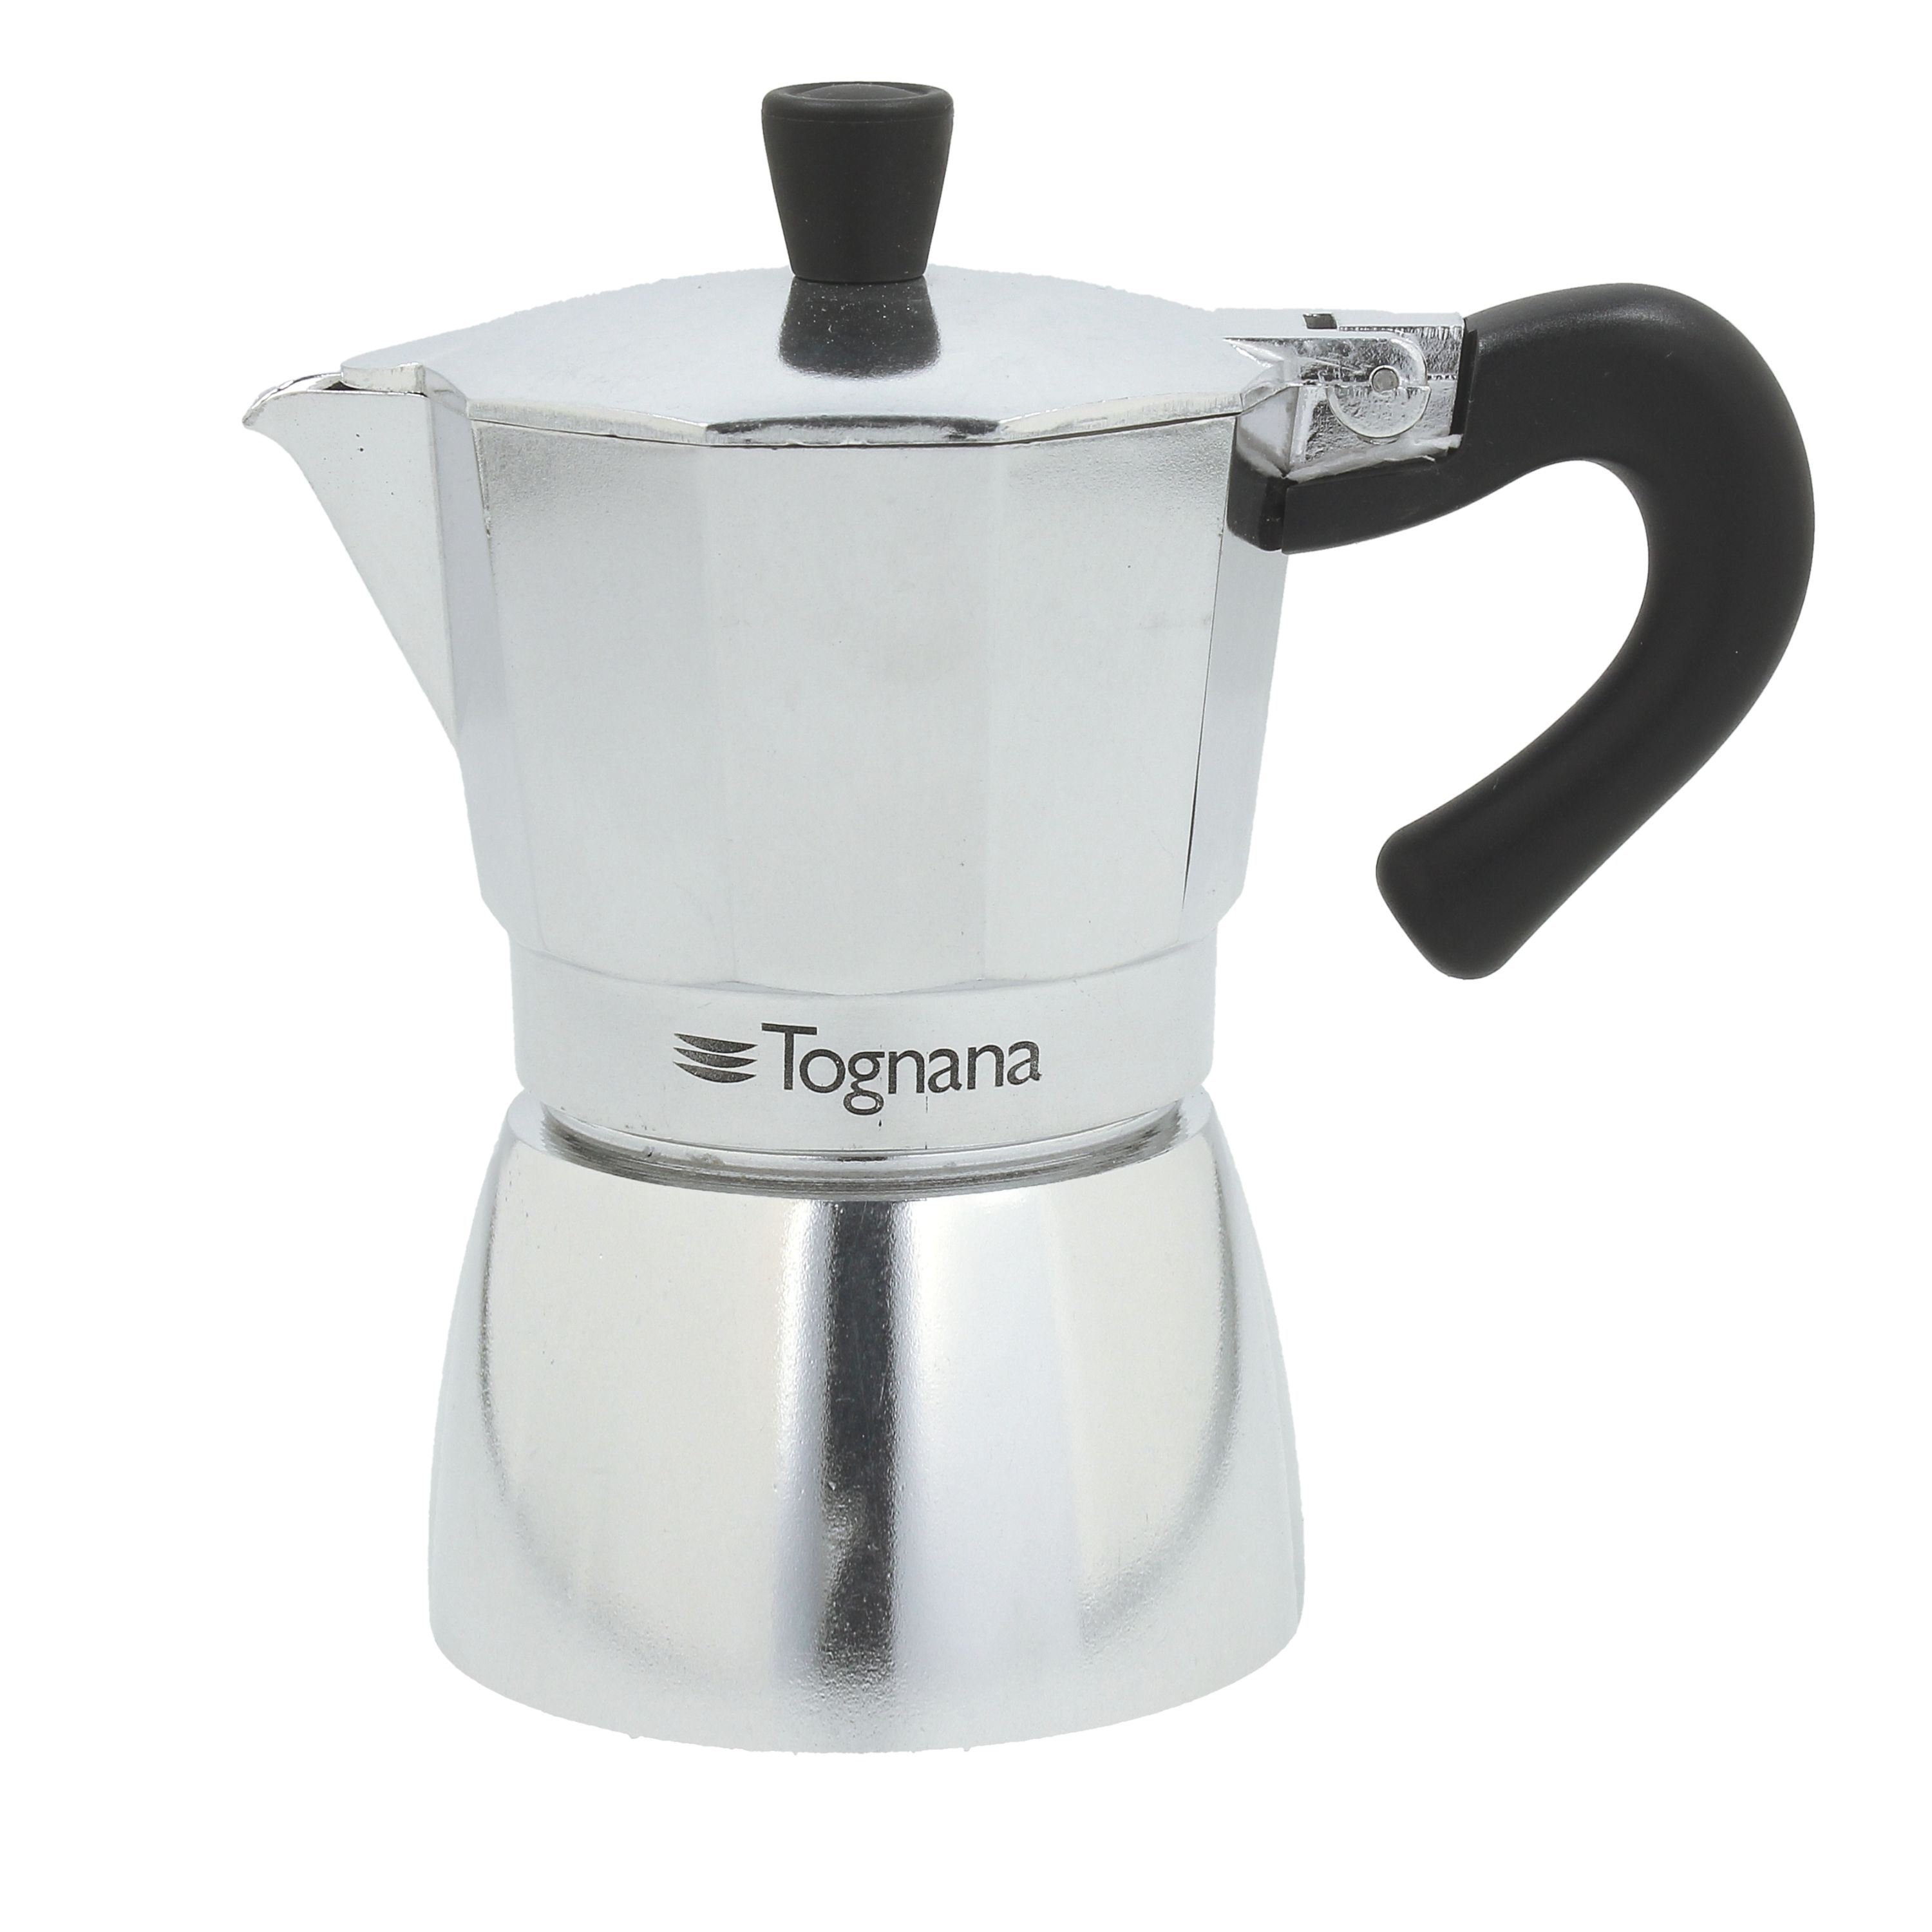 https://ak1.ostkcdn.com/images/products/is/images/direct/52189c8d3de222e540f6cc4dad7b42644e826009/Mirror-Moka-Stovetop-Coffee-Pot%2C-Espresso.jpg